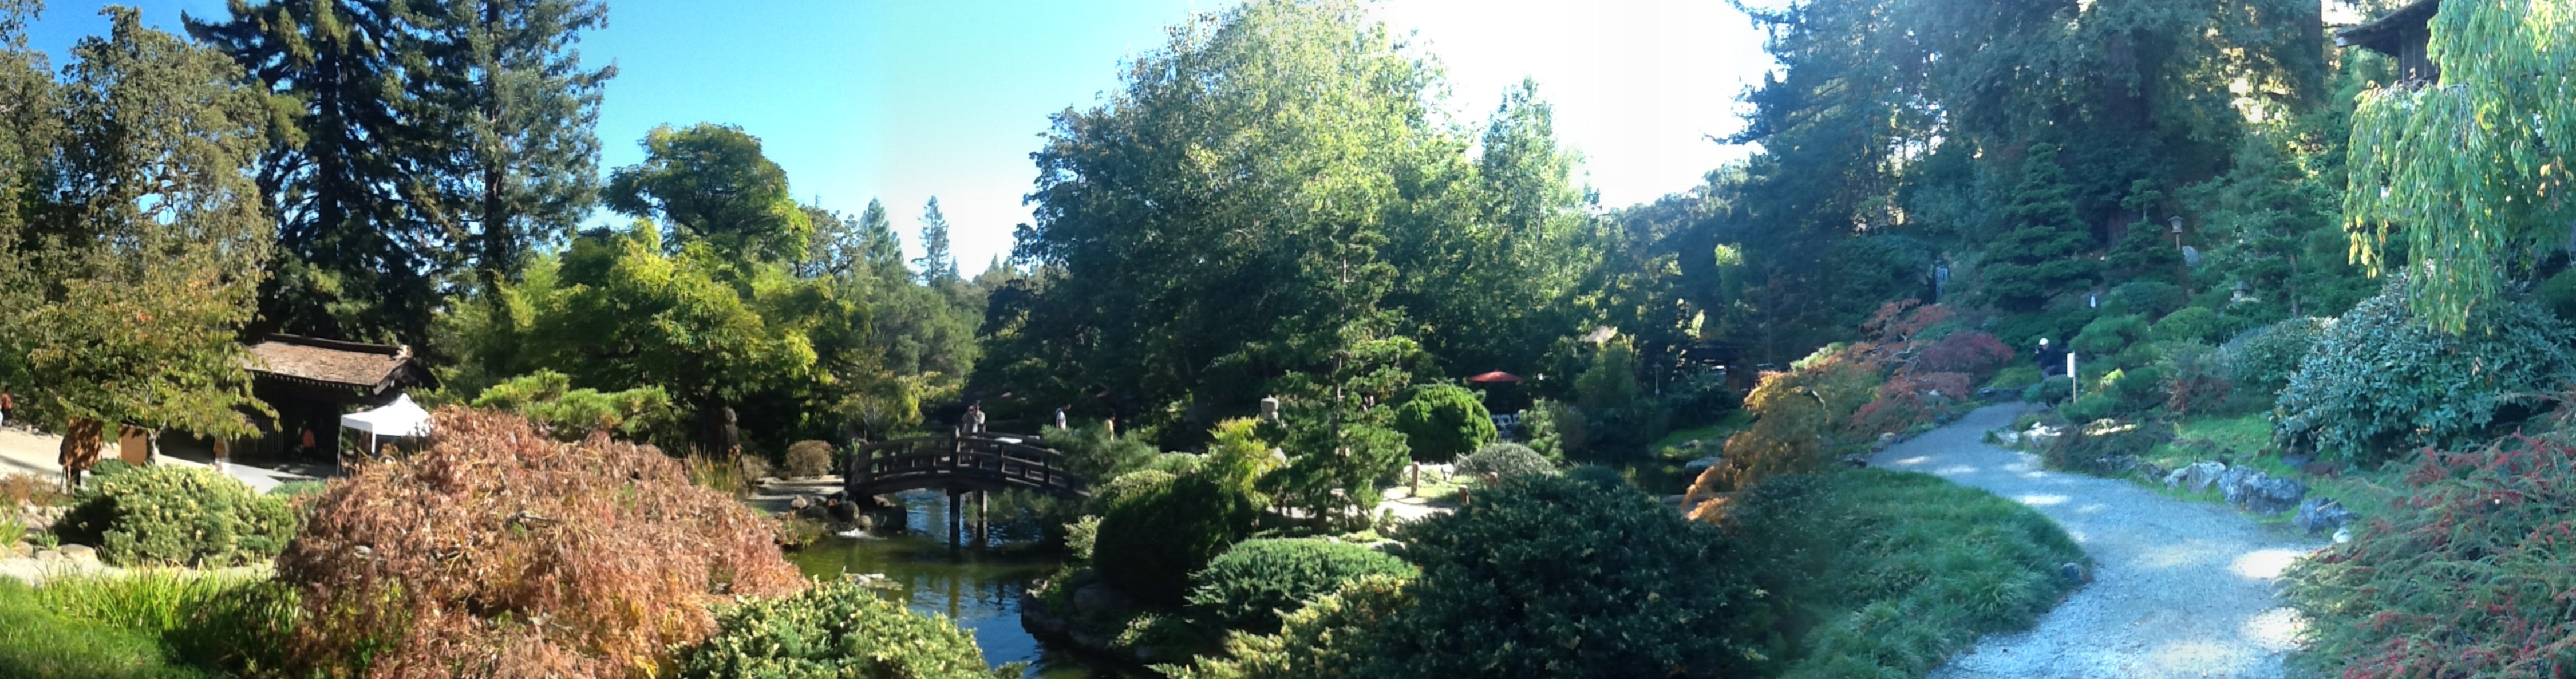 photo of Hakone Gardens